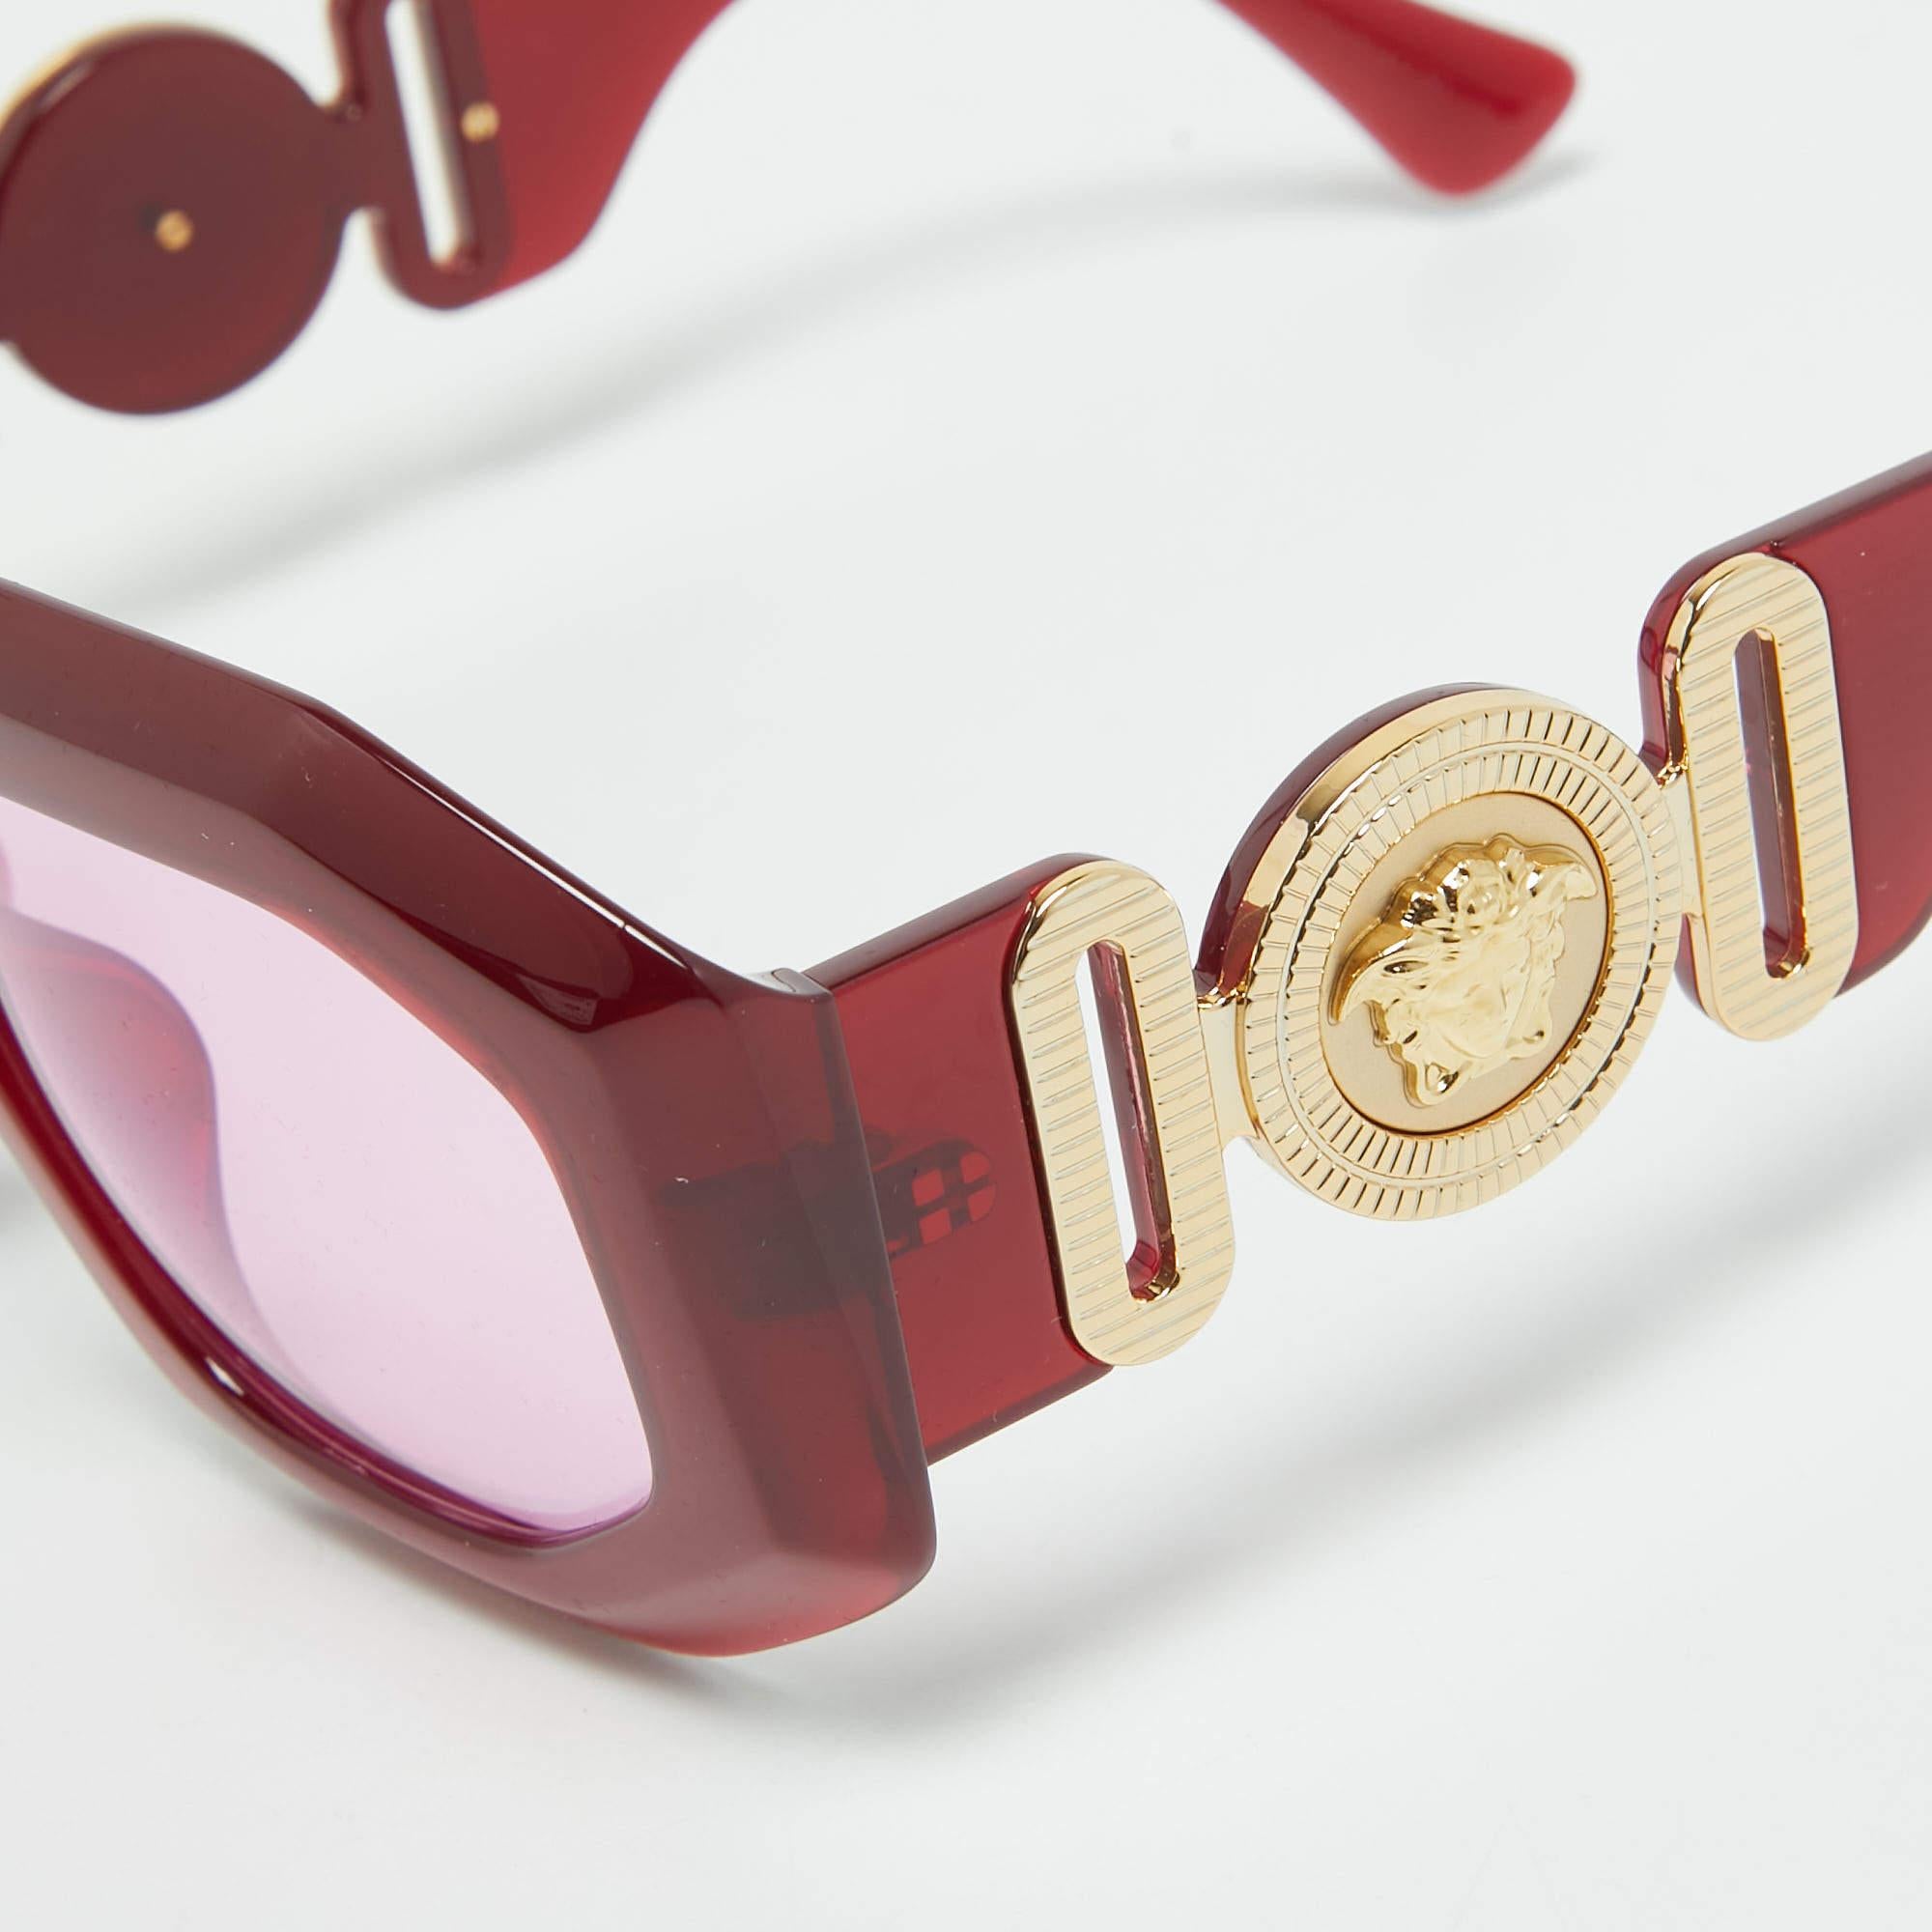 Profitez des journées ensoleillées avec style grâce à cette paire de lunettes de soleil Medusa de Versace. Créées avec expertise, ces lunettes de soleil de luxe sont dotées d'une monture bien conçue et de verres de qualité supérieure qui sont